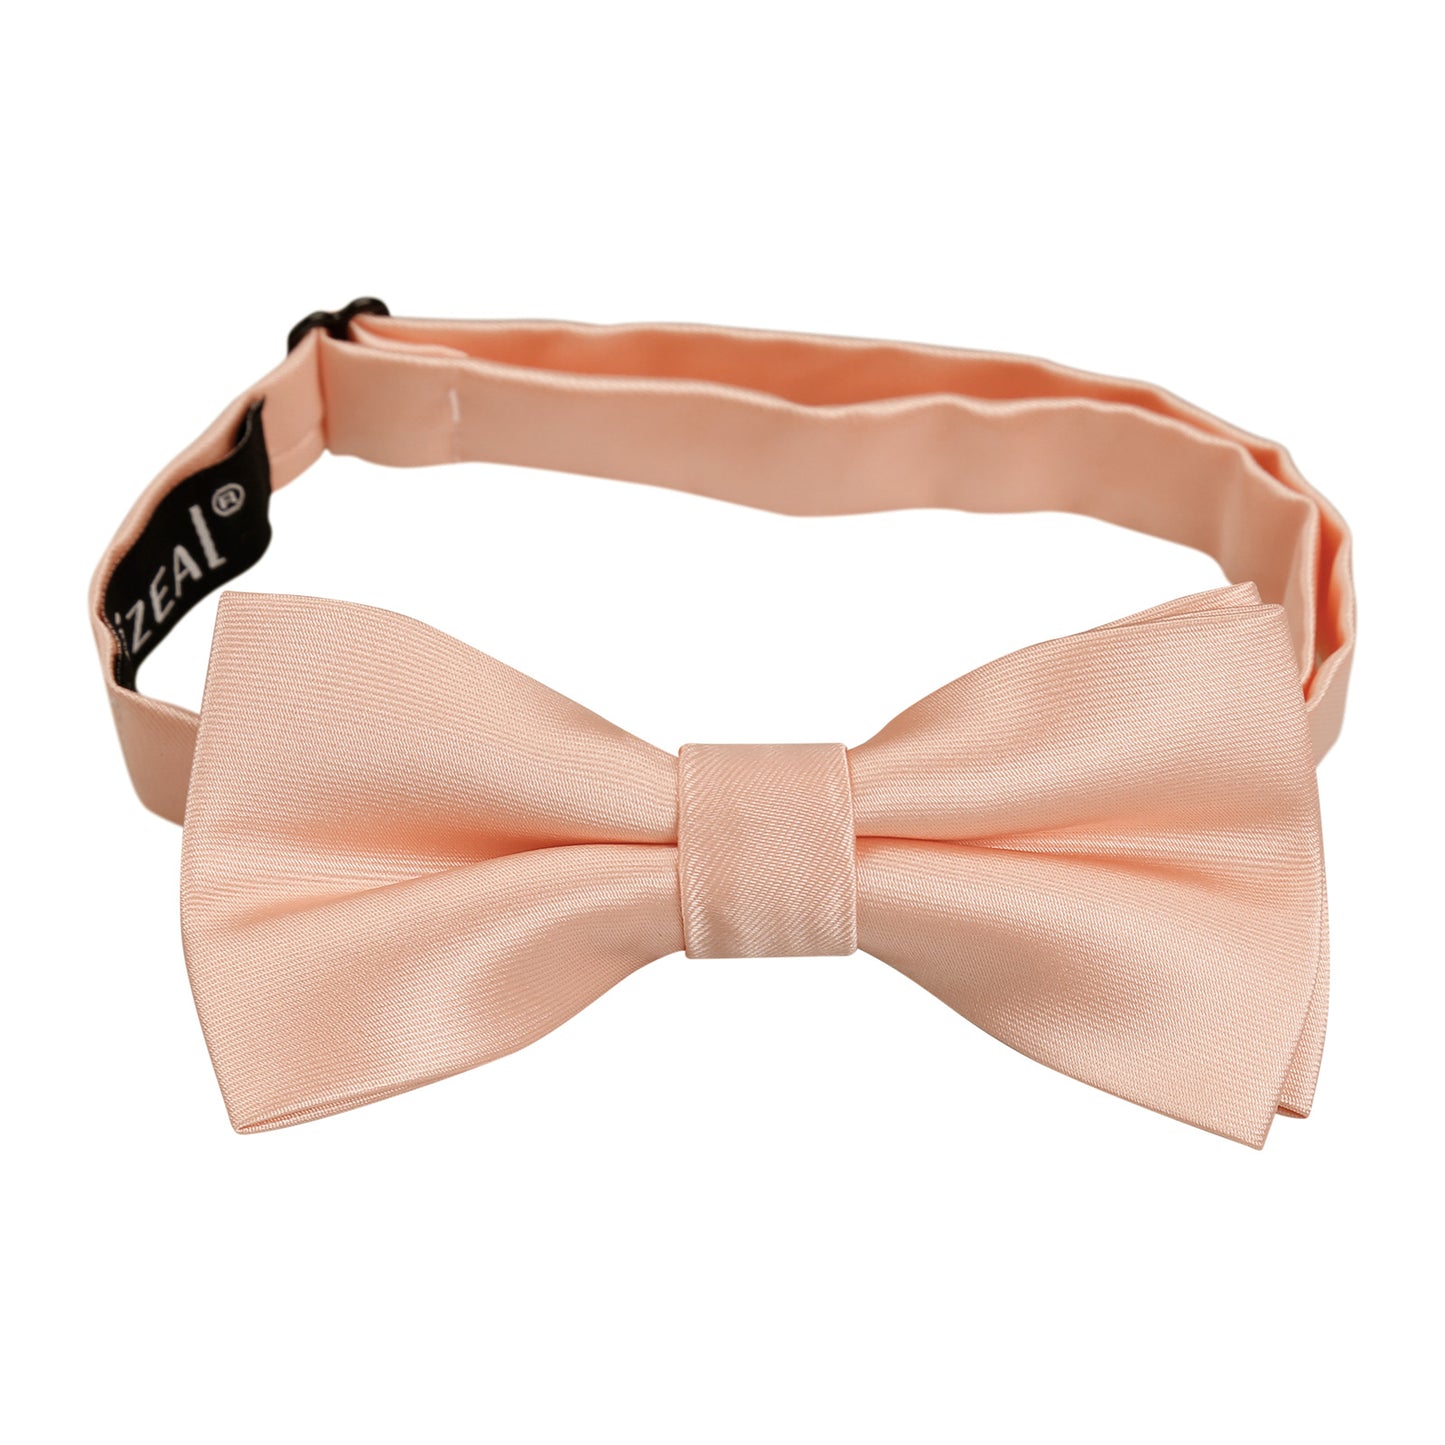 Boy's Adjustable Pre Tied Wedding Party Tuxedo Bow Tie #080